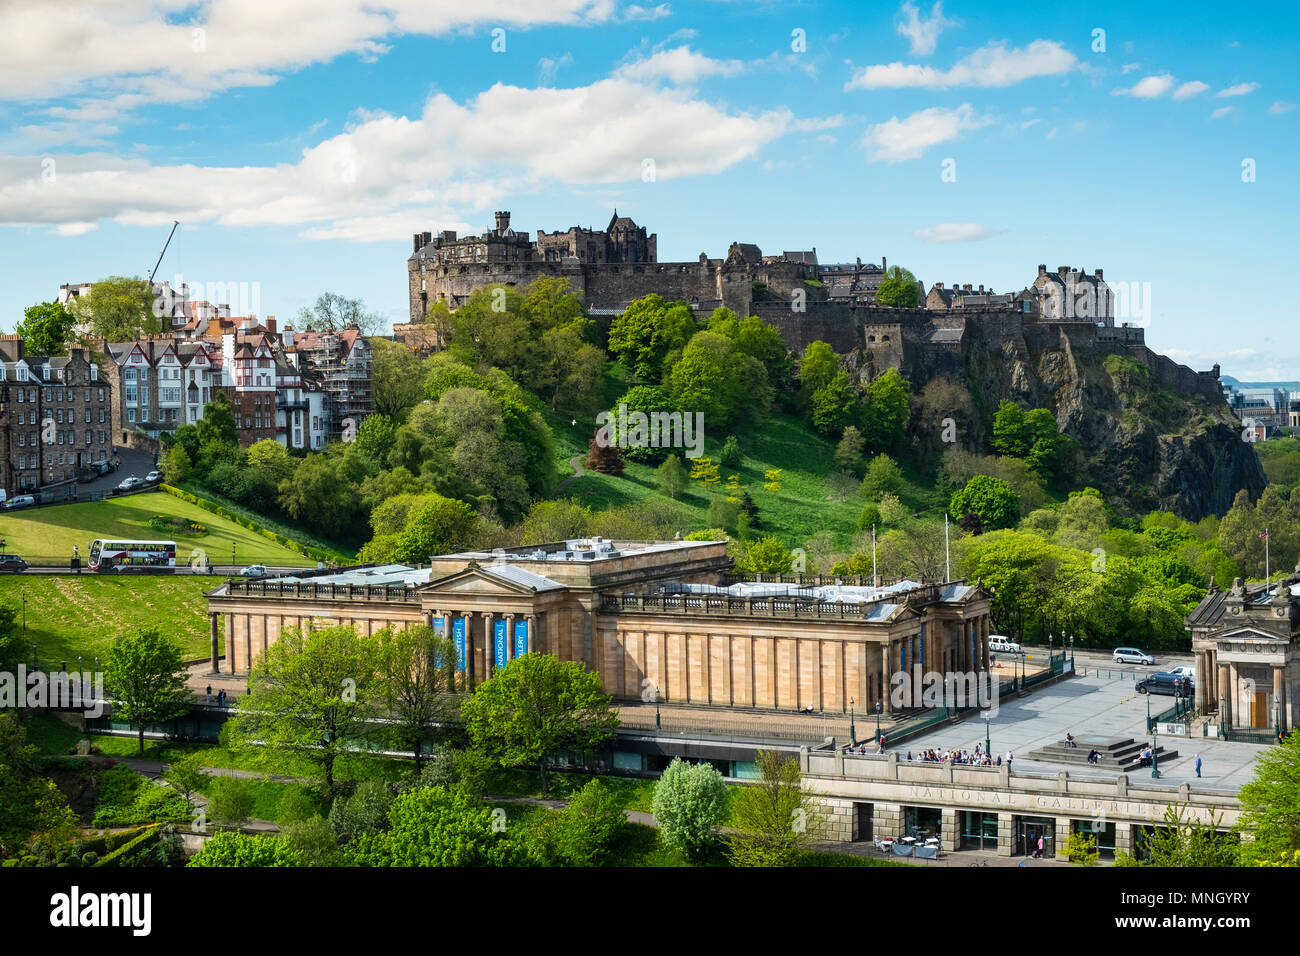 Horizonte de los jardines de Princes Street, el Castillo de Edimburgo, y la Galería Nacional de Escocia, en Edimburgo, Escocia, Reino Unido Foto de stock